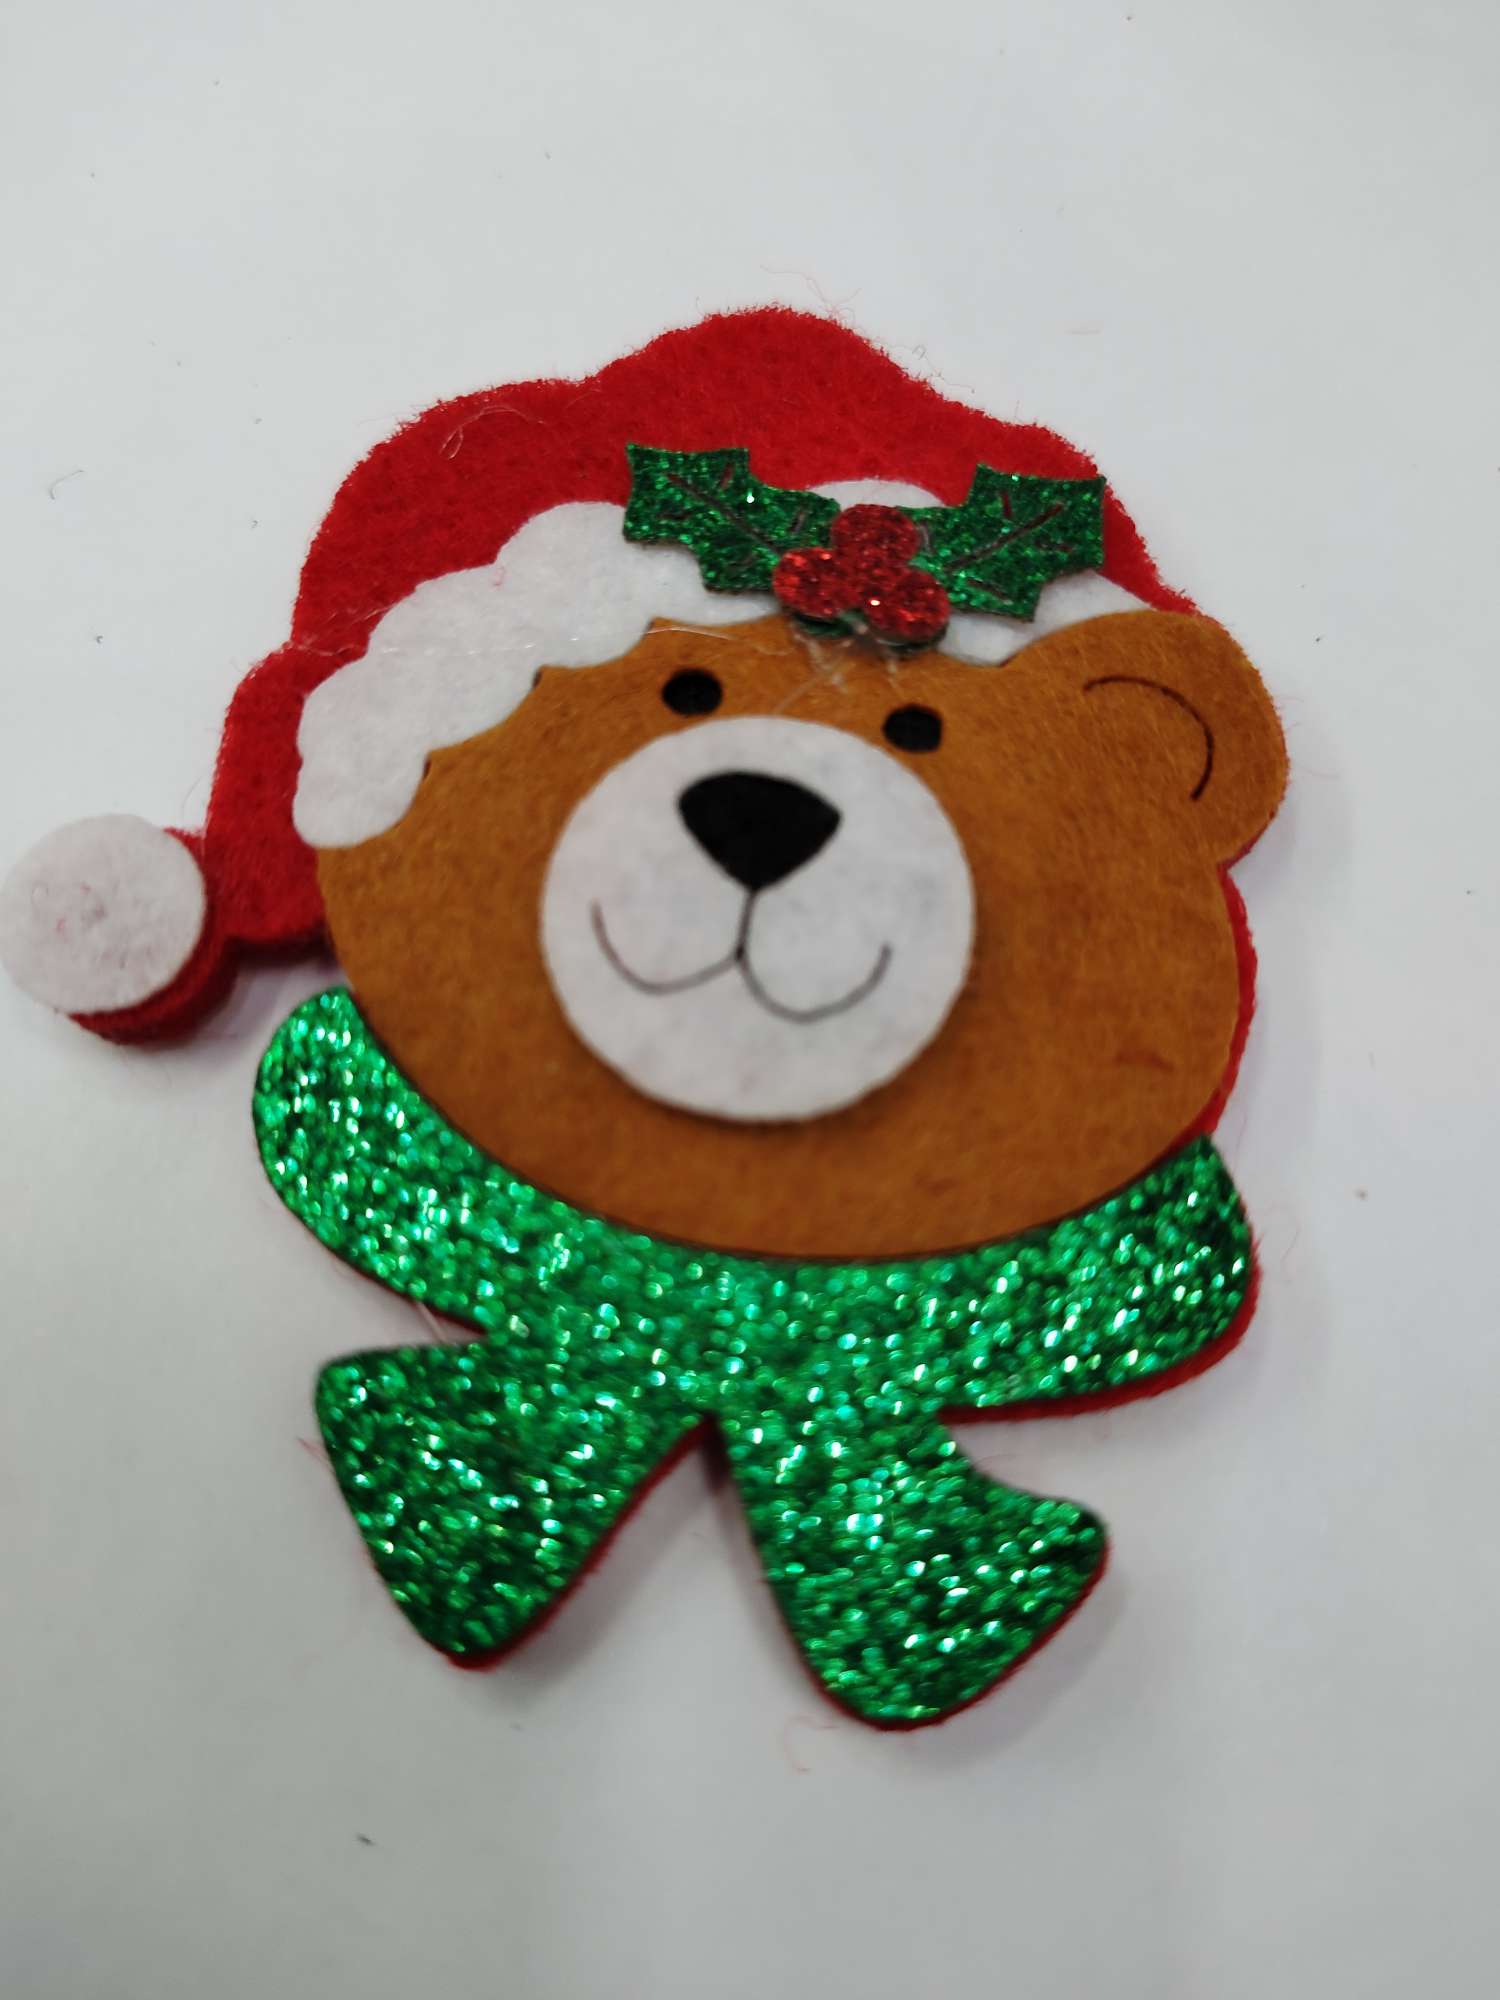 毛毡布圣诞熊头 不织布熊头 无纺布葱粉布熊头 厂家直销 加工定做 来样定制。